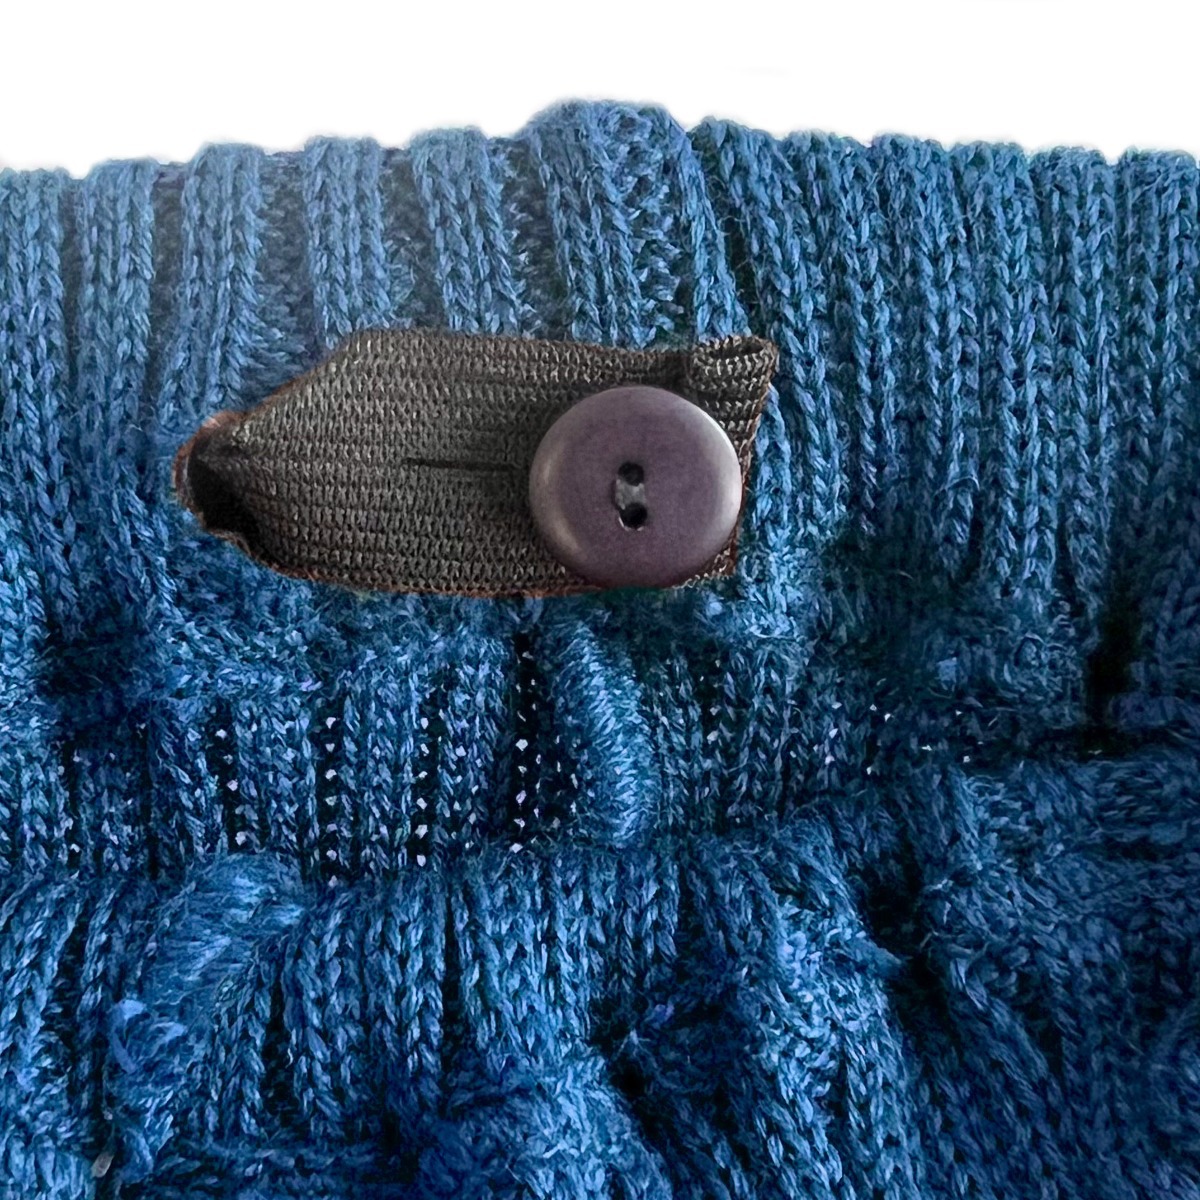 Detské pletené legíny Fusakle MERINO modré